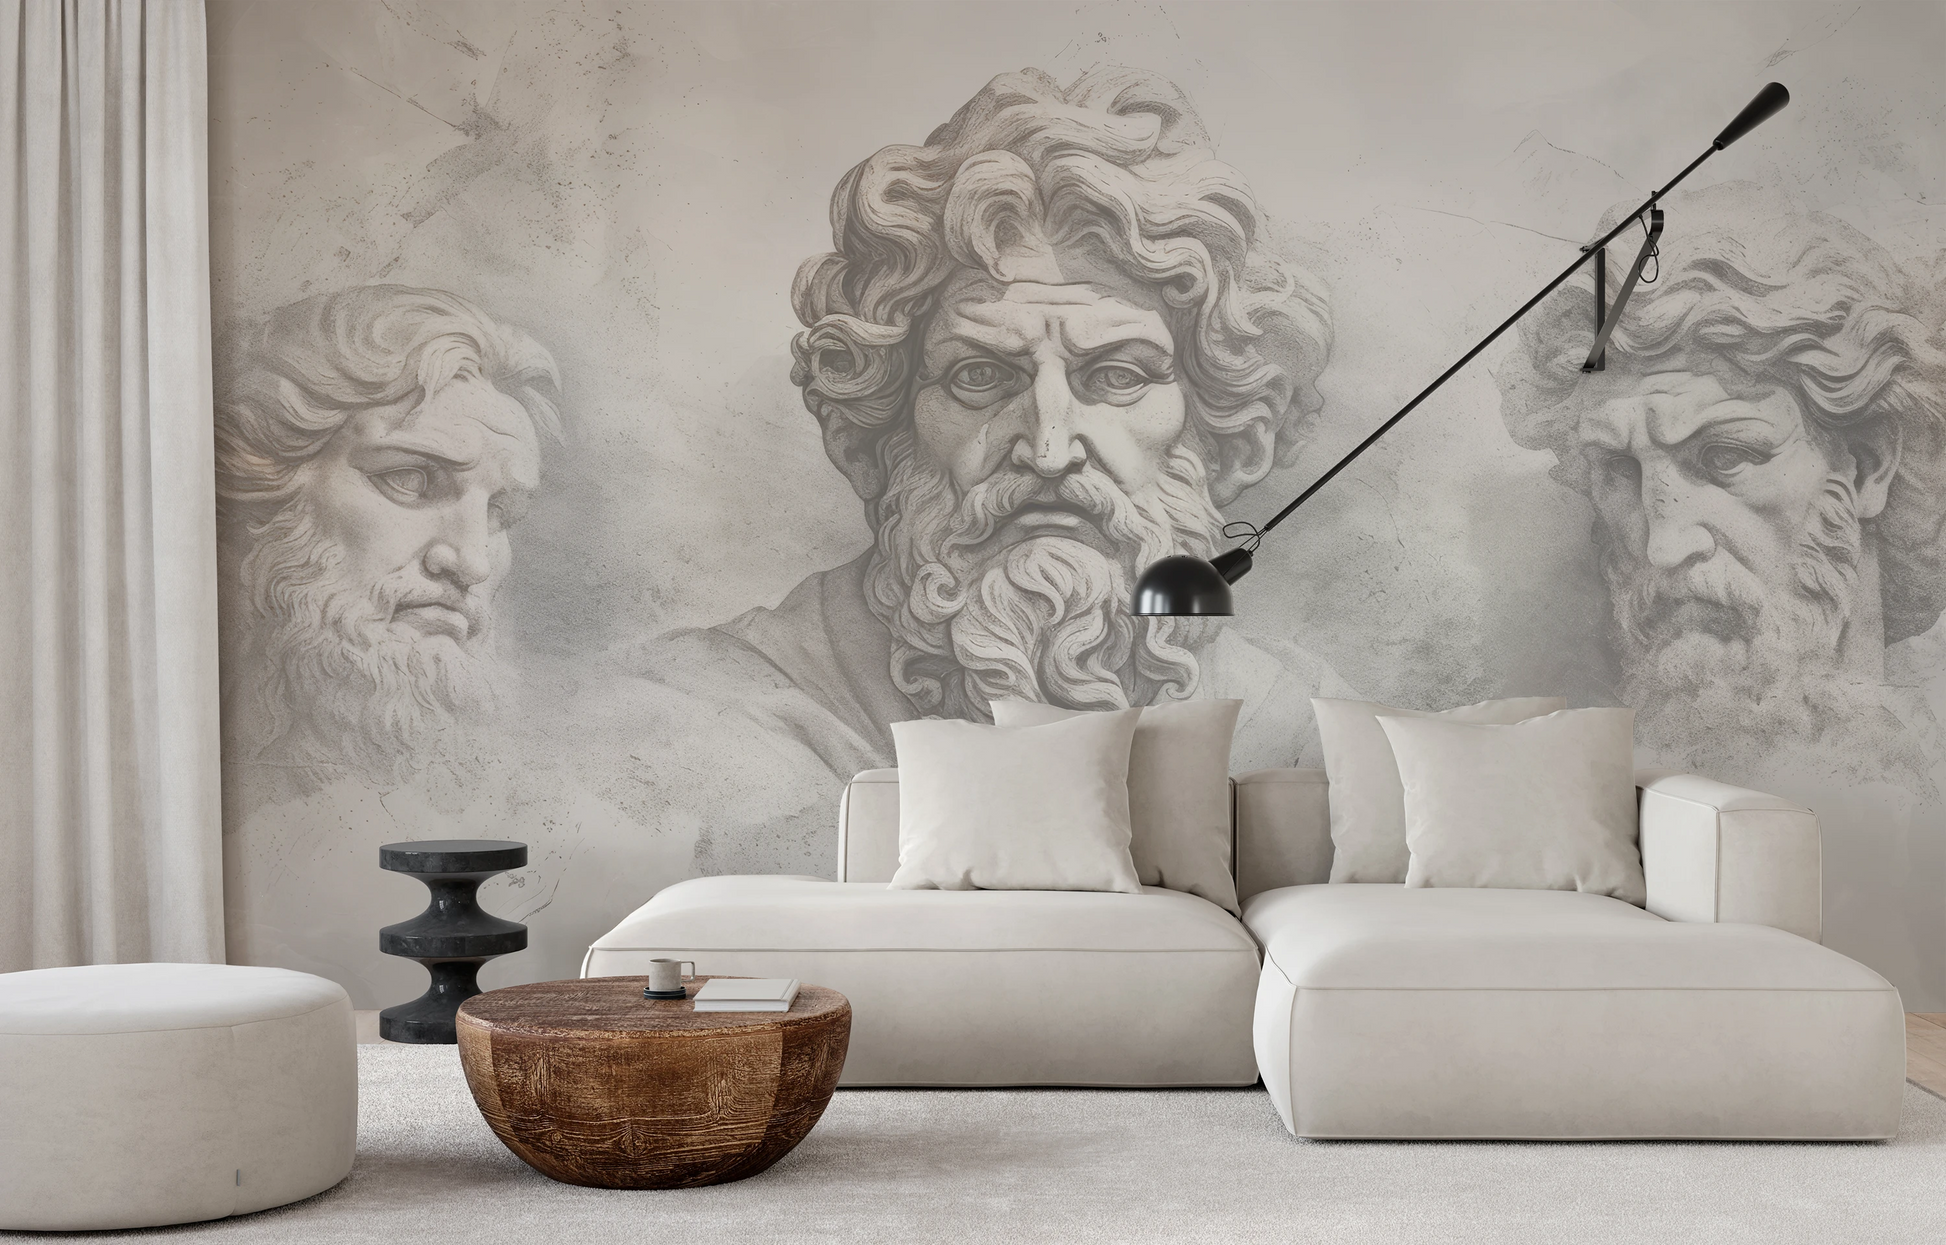 Fototapeta malowana o nazwie Epicurus's Legacy pokazana w aranżacji wnętrza.